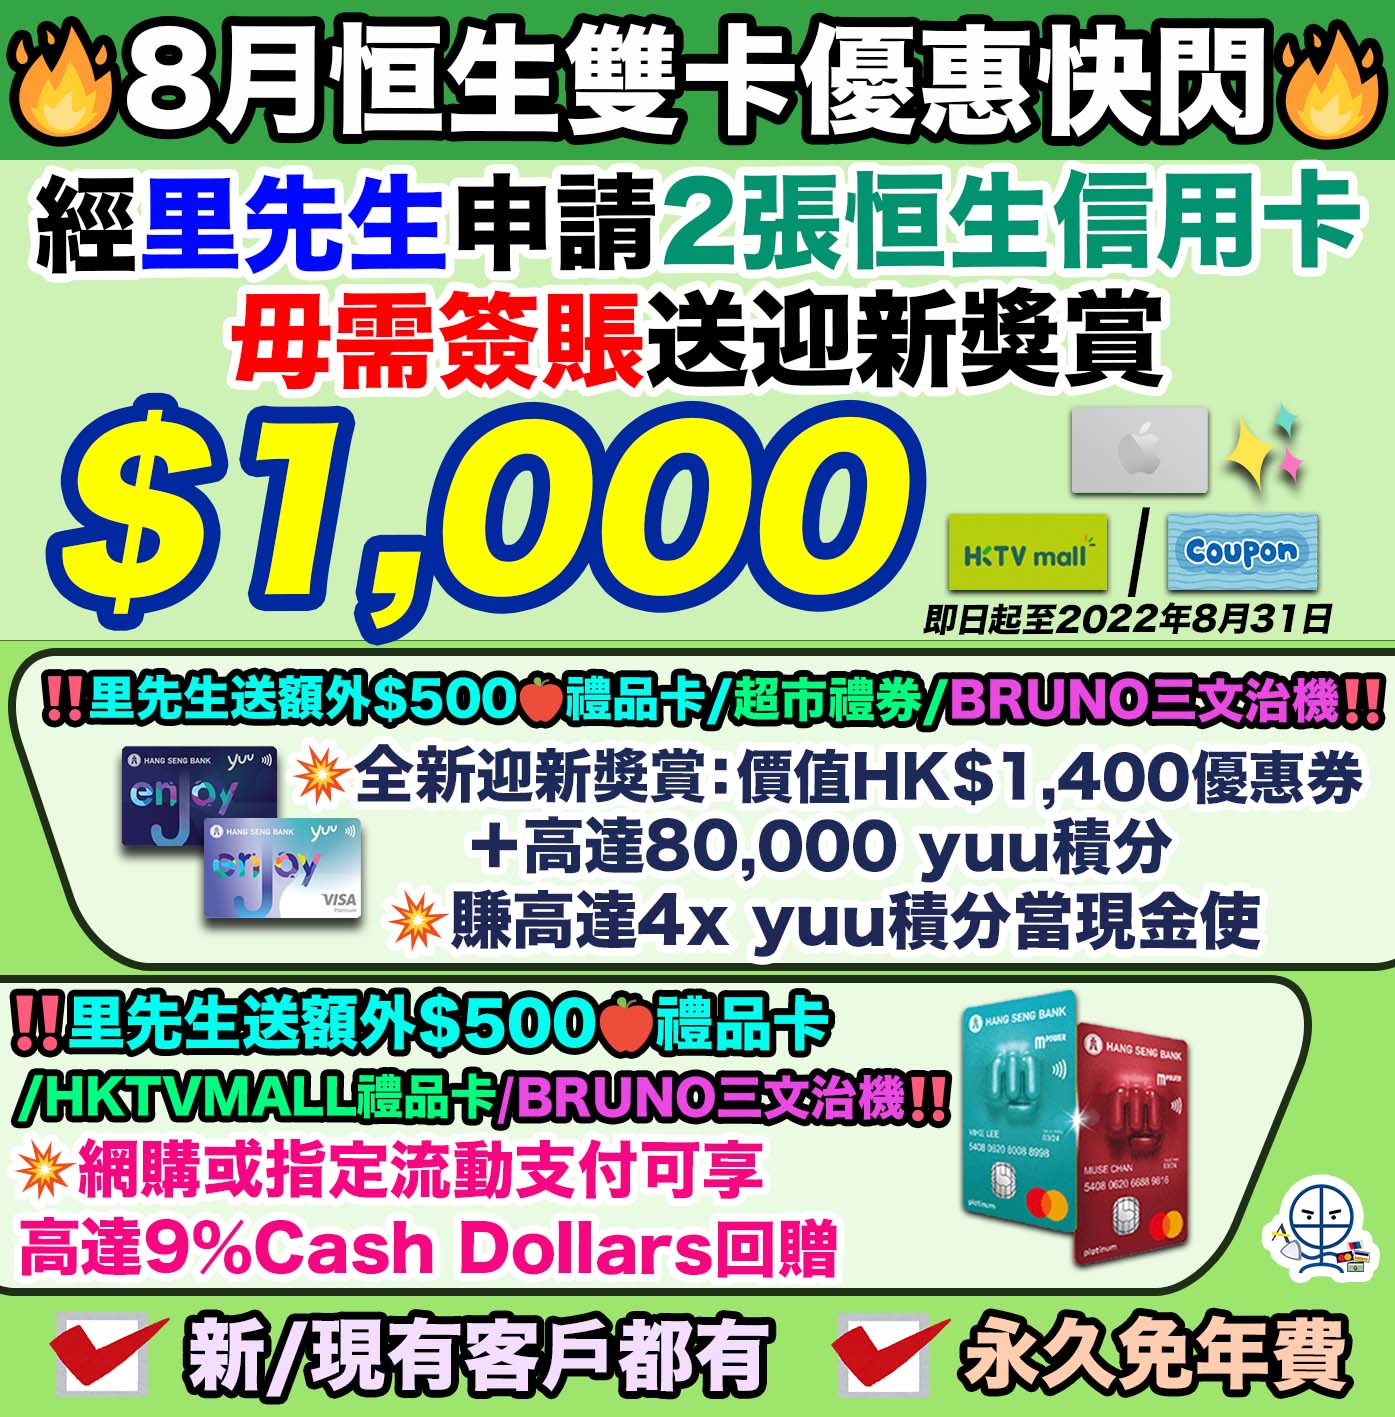 恒生enJoy卡萬寧優惠 簽賬滿HK$300 即賺$30 enJoy Dollars!